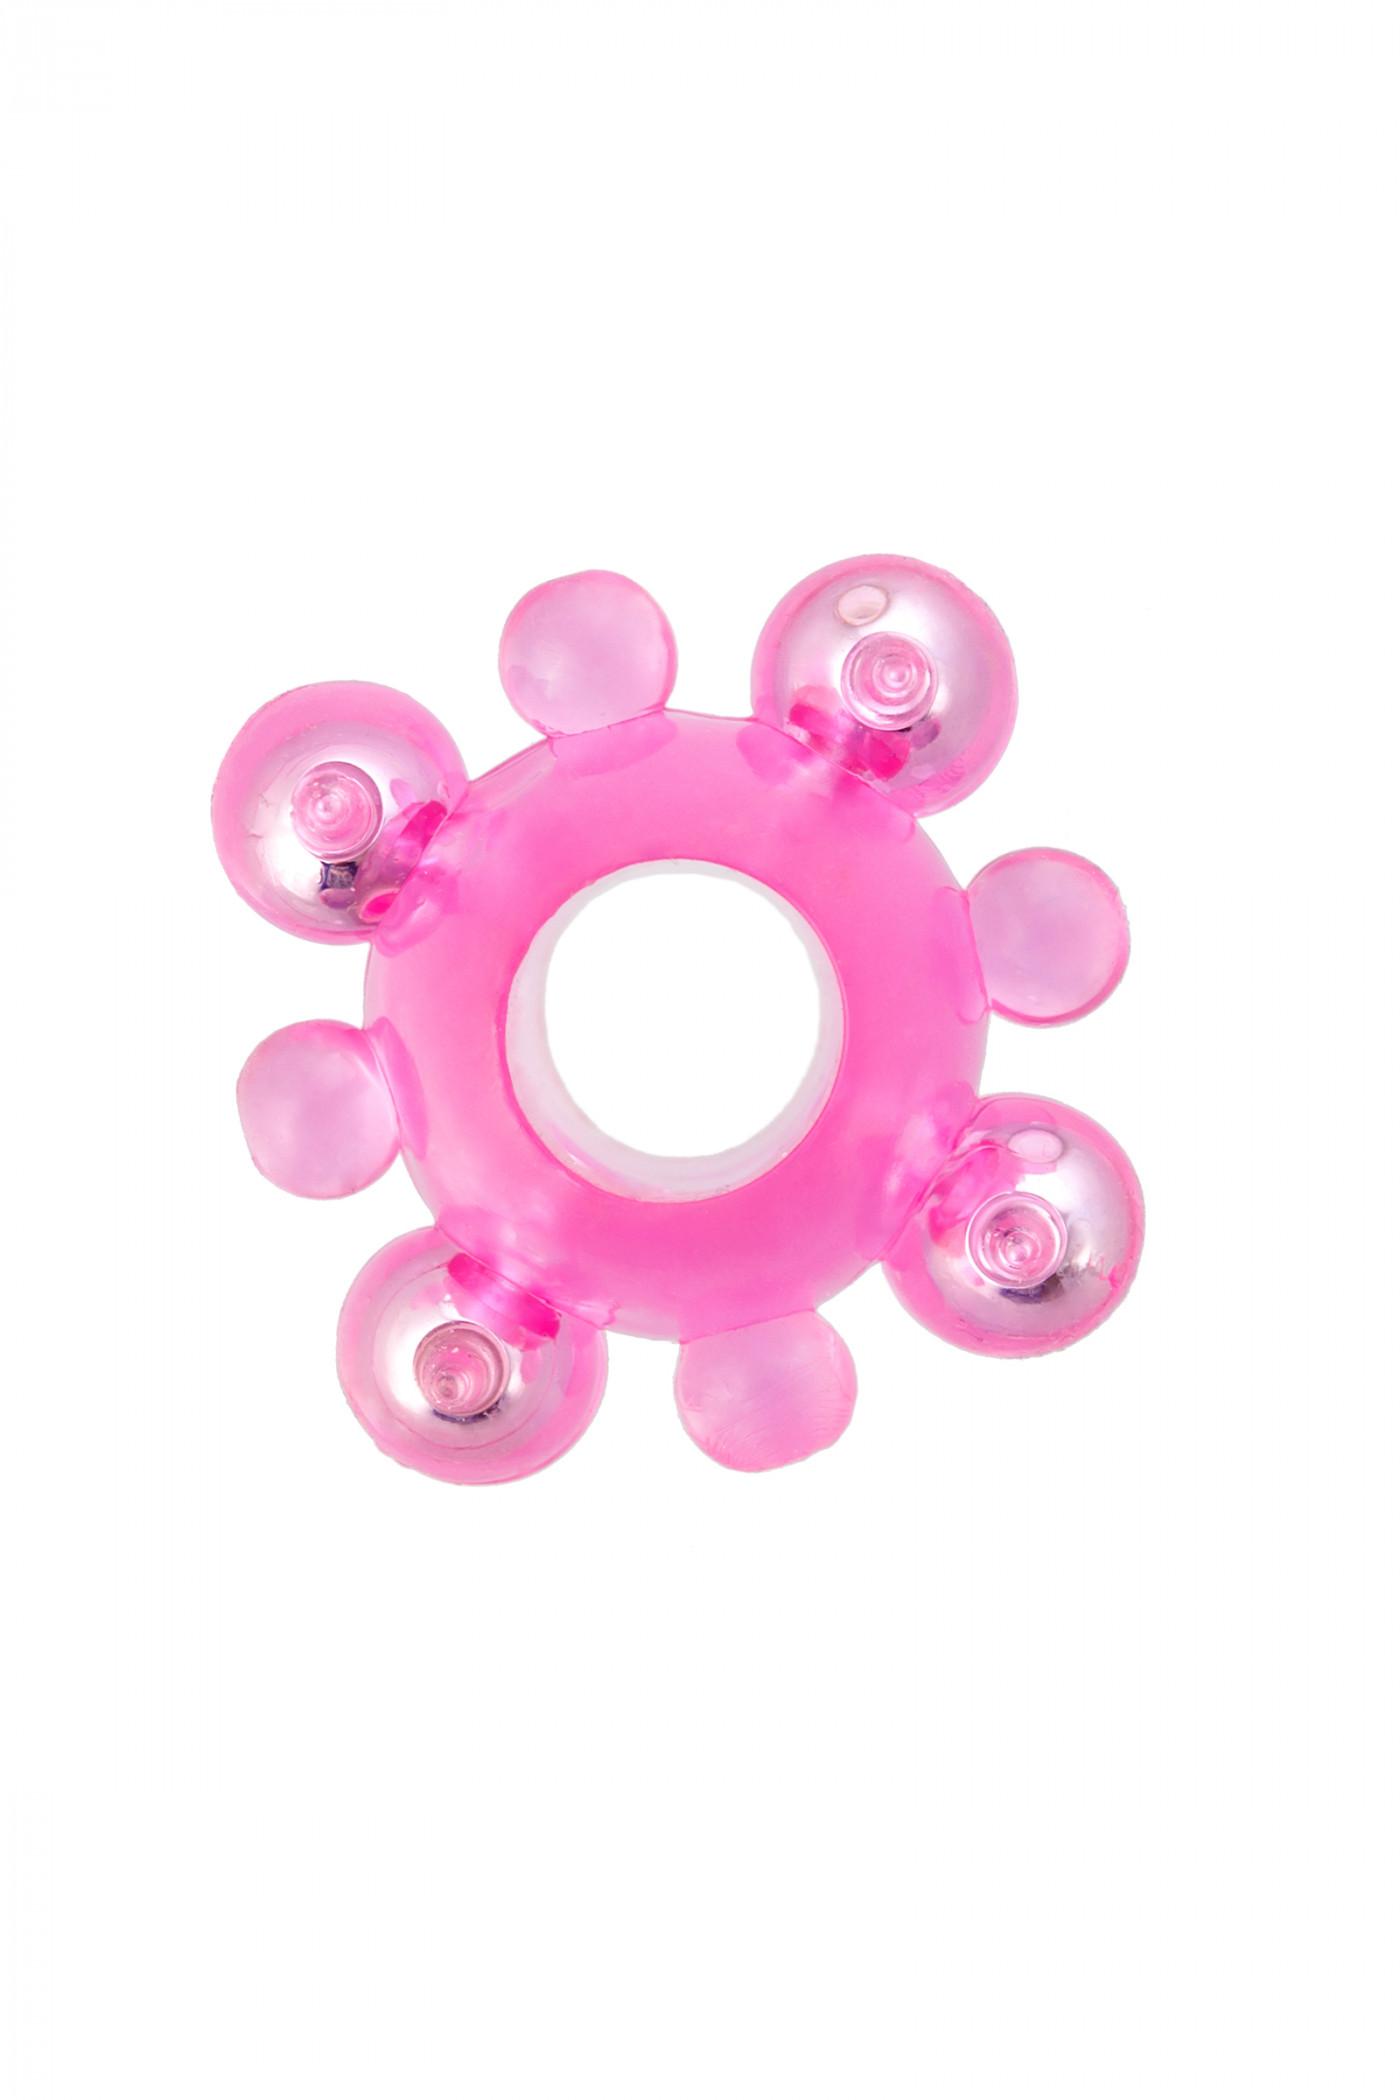 Эрекционное кольцо с бусинками TOYFA, TPE, розовый